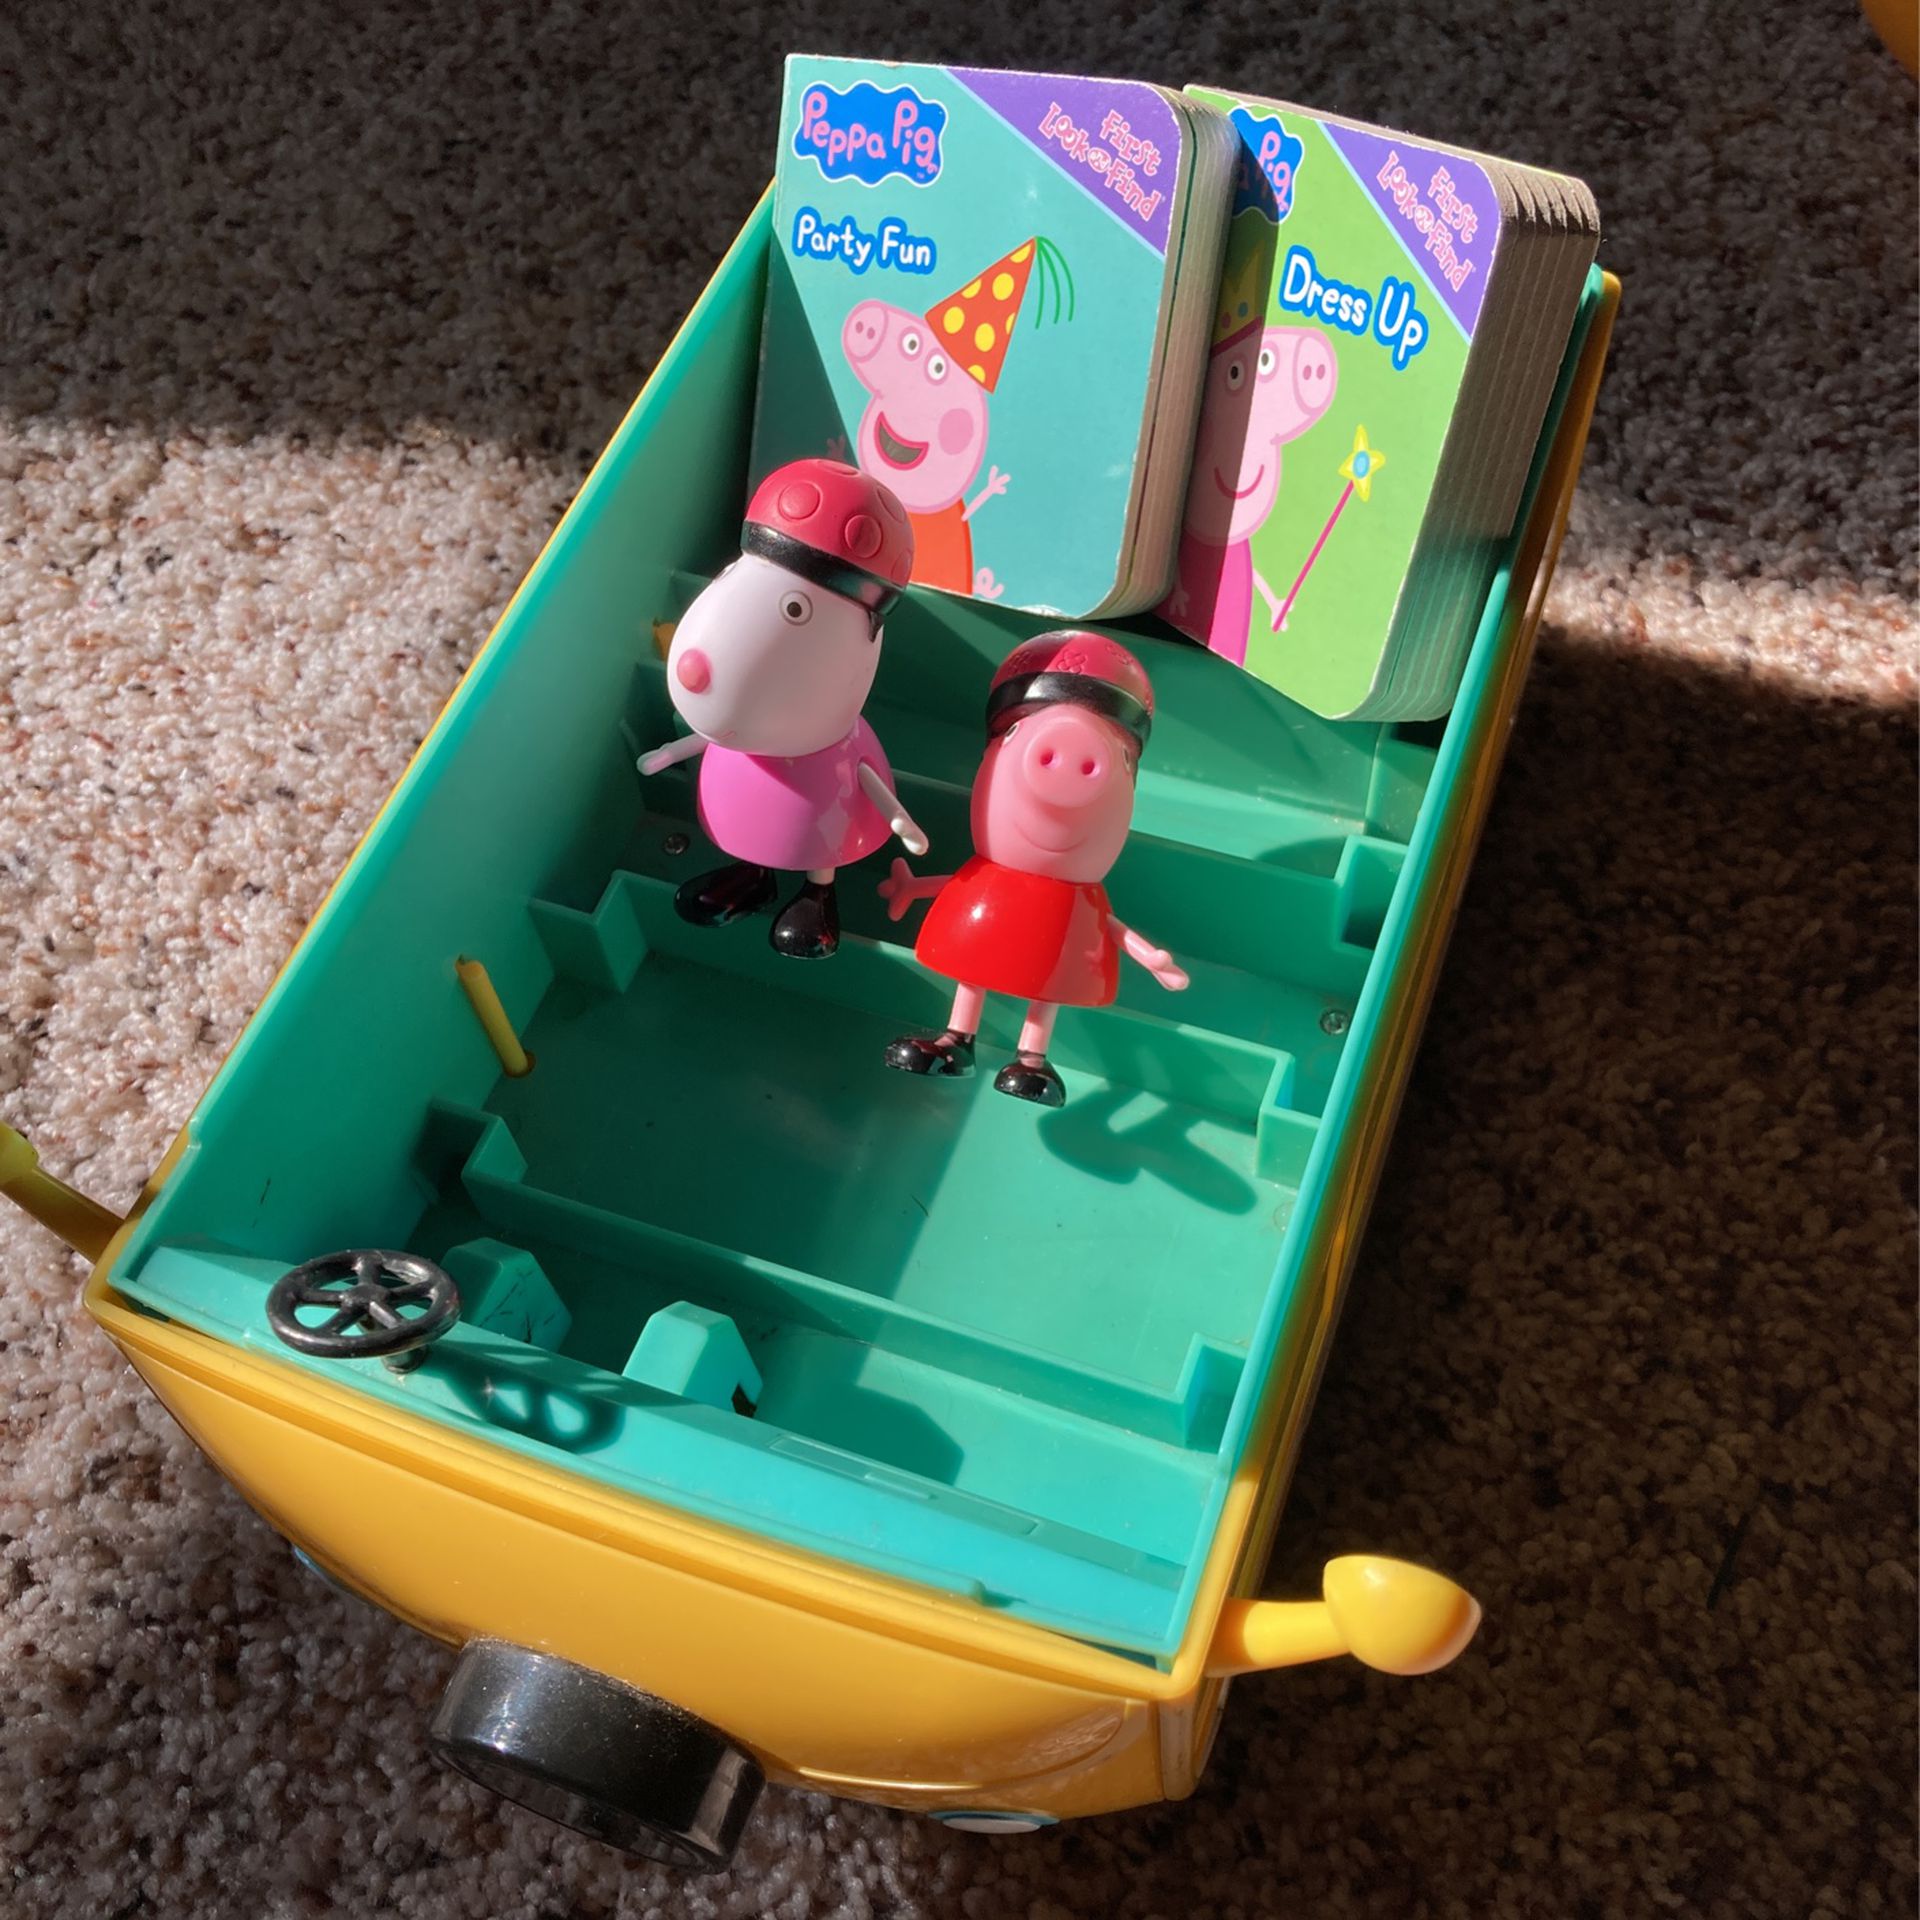 Peppa Pig Toys Van 2 Figures 2 Books No Lid For Van